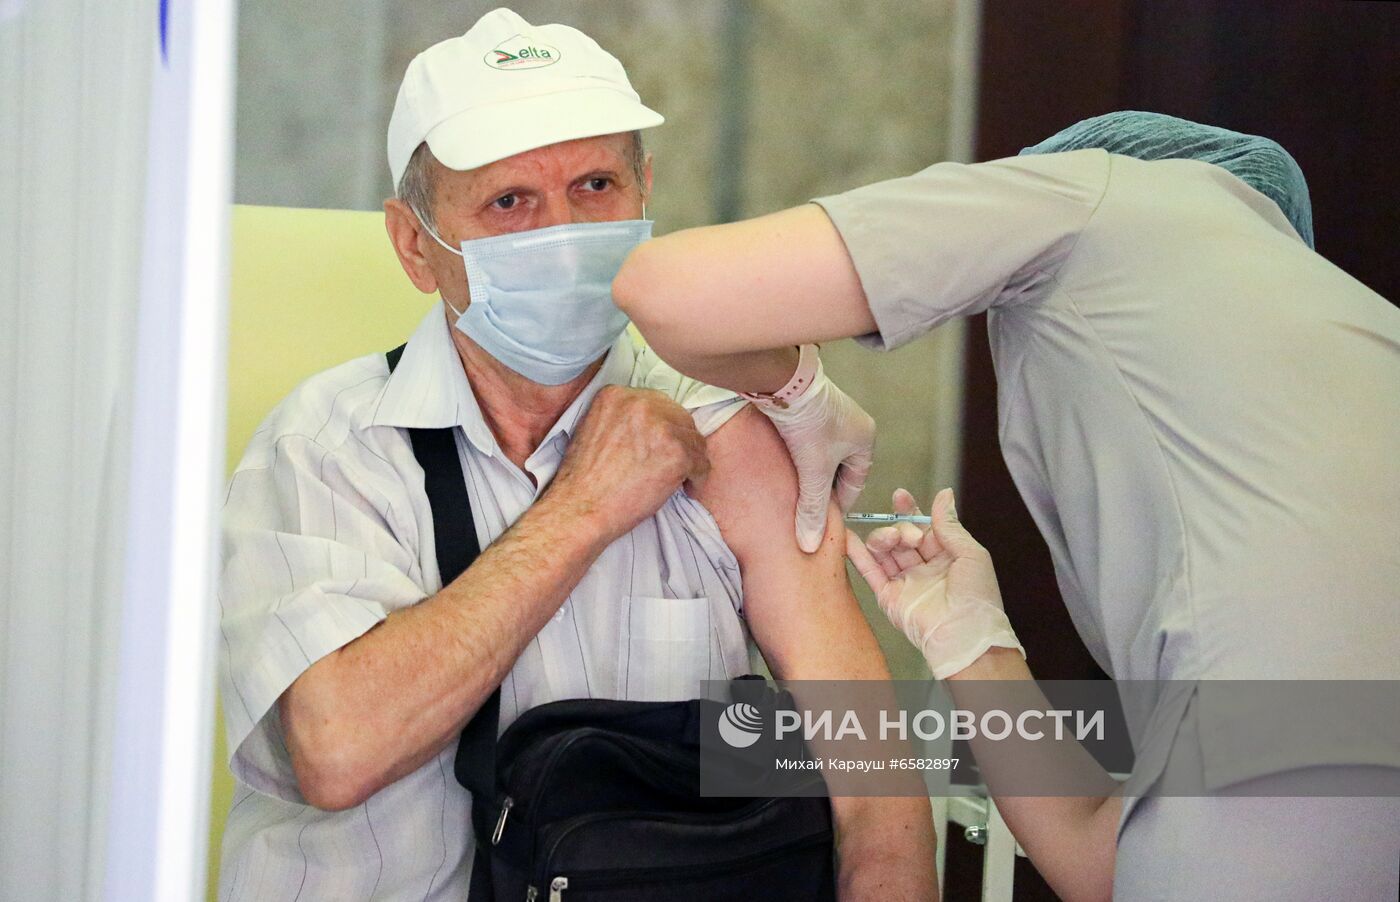 "Марафон" вакцинации российской вакциной "Спутник V" в Кишиневе